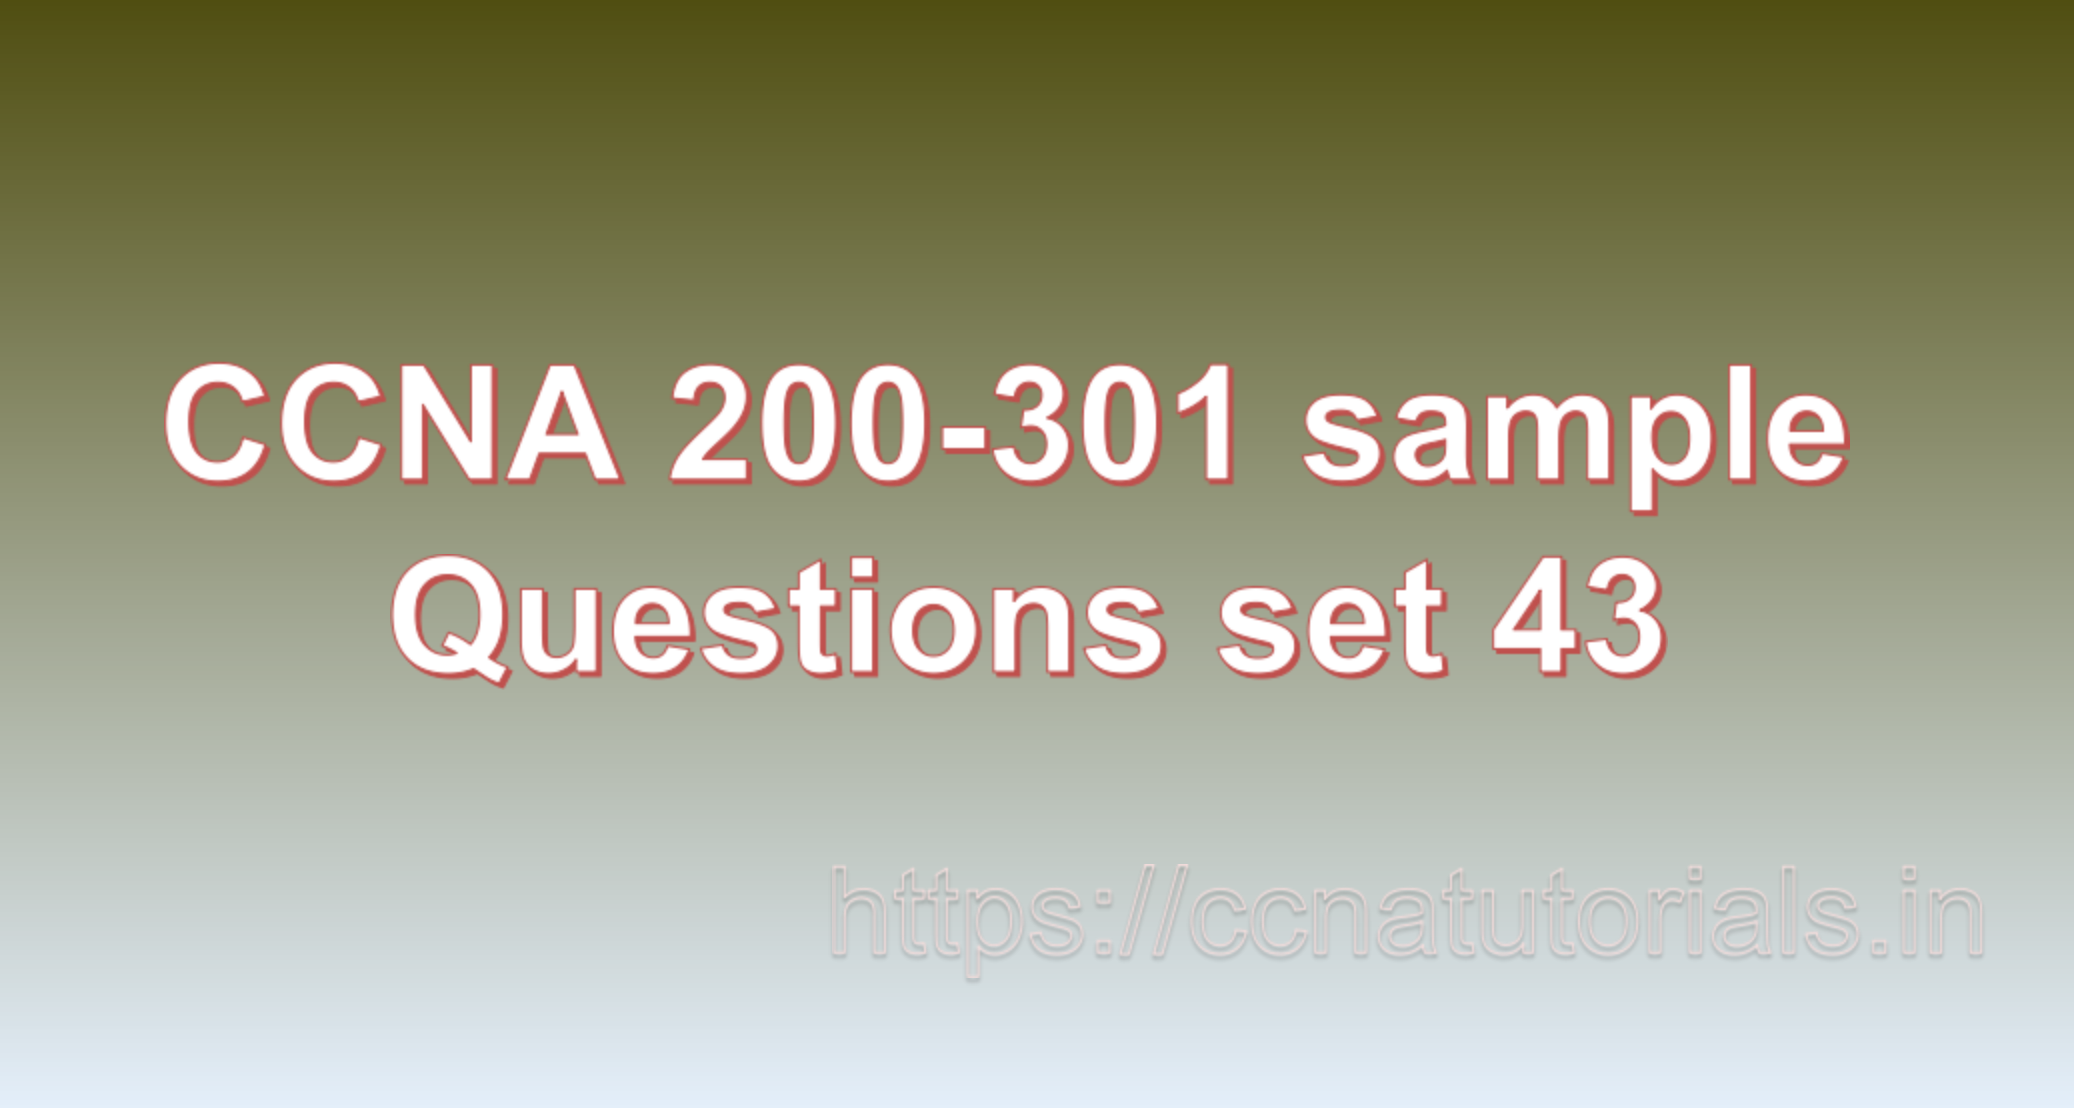 ccna sample questions set 43, ccna tutorials, CCNA Exam, ccna